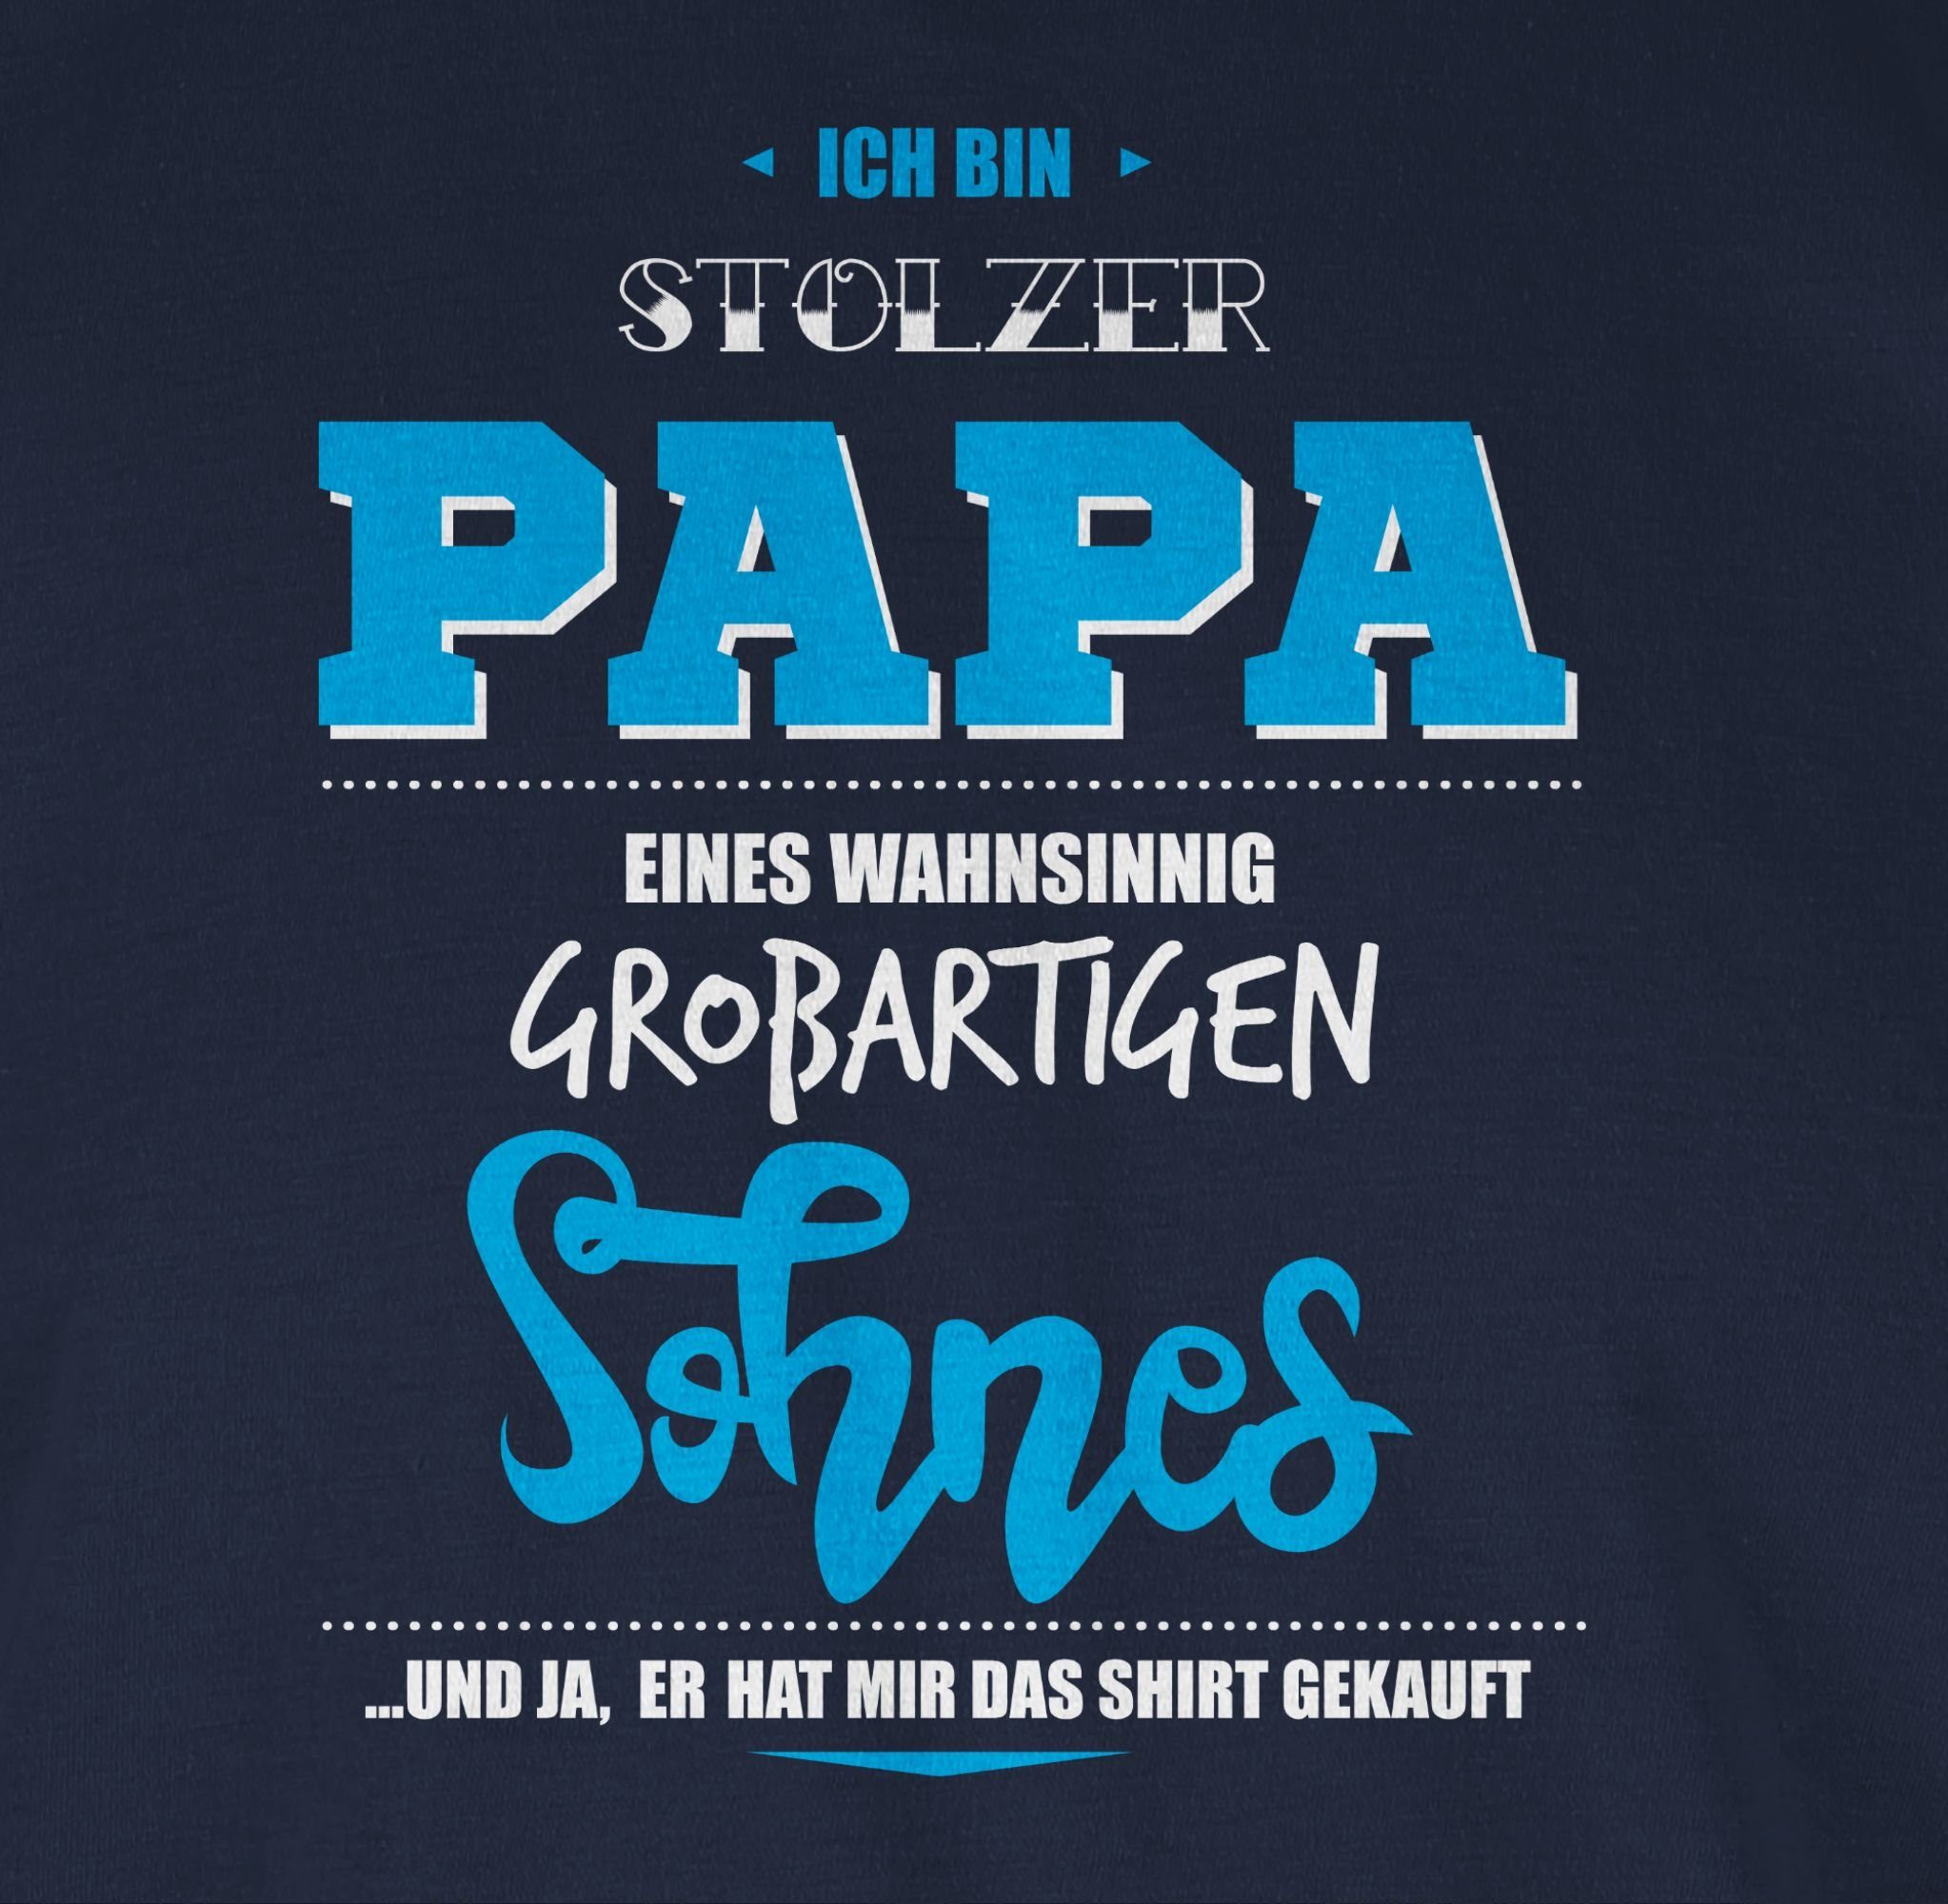 Shirtracer T-Shirt Ich bin stolzer Vatertag Geschenk wahnsinnig eines Sohnes 2 Blau für Papa Papa Navy großartigen